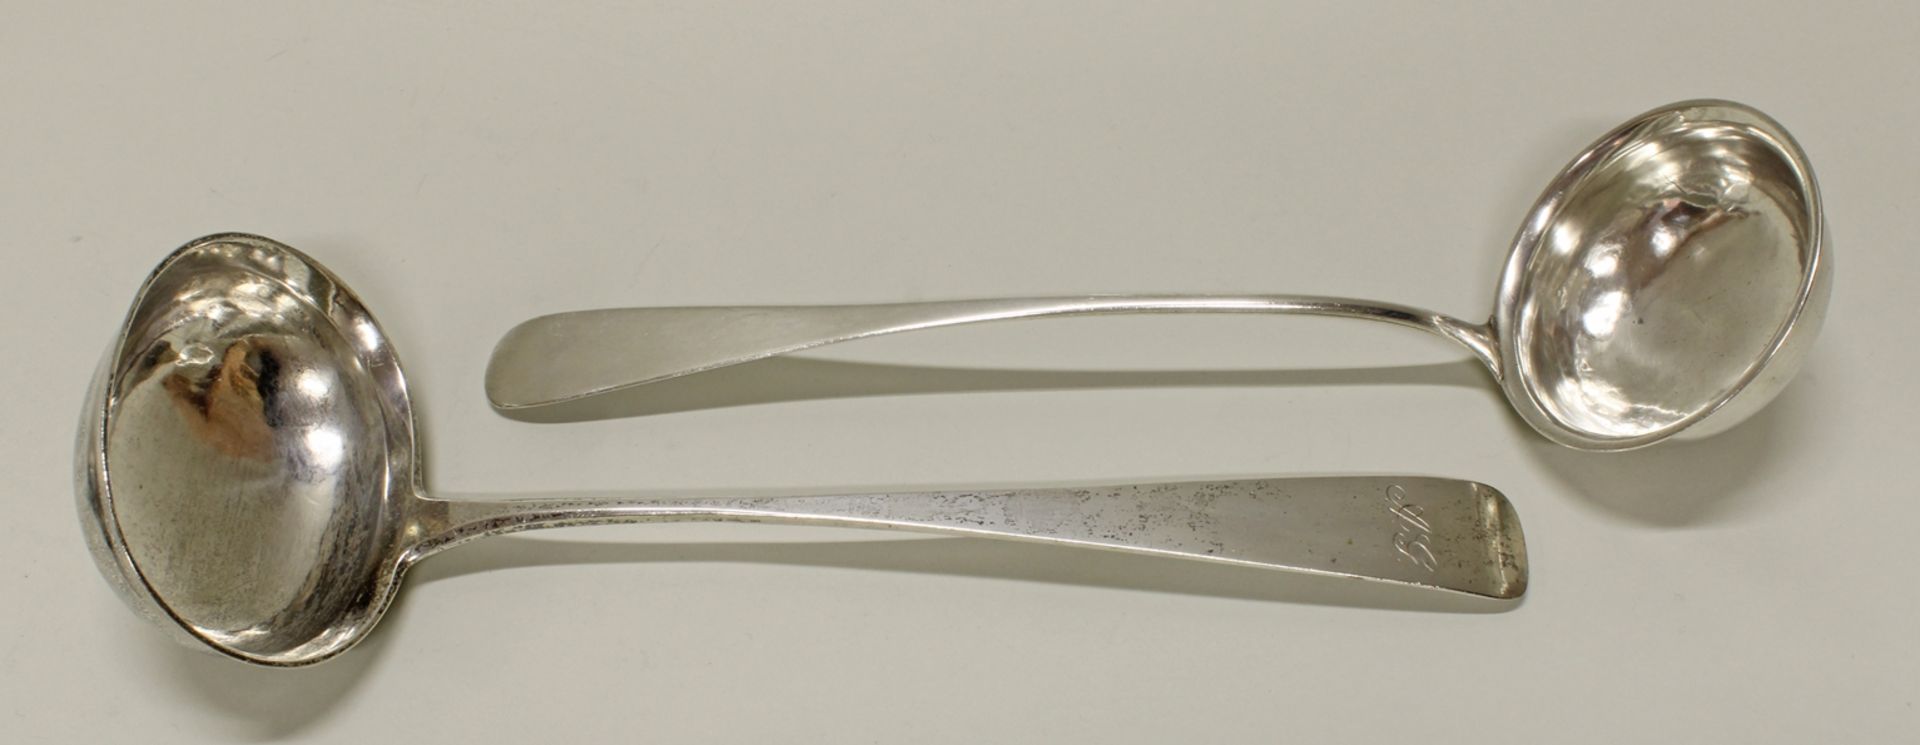 2 Suppenkellen, Silber, Hamburg, 19. Jh., Meistermarken ICS bzw. Giese, 1x Monogramm, ca. 33 cm hoc